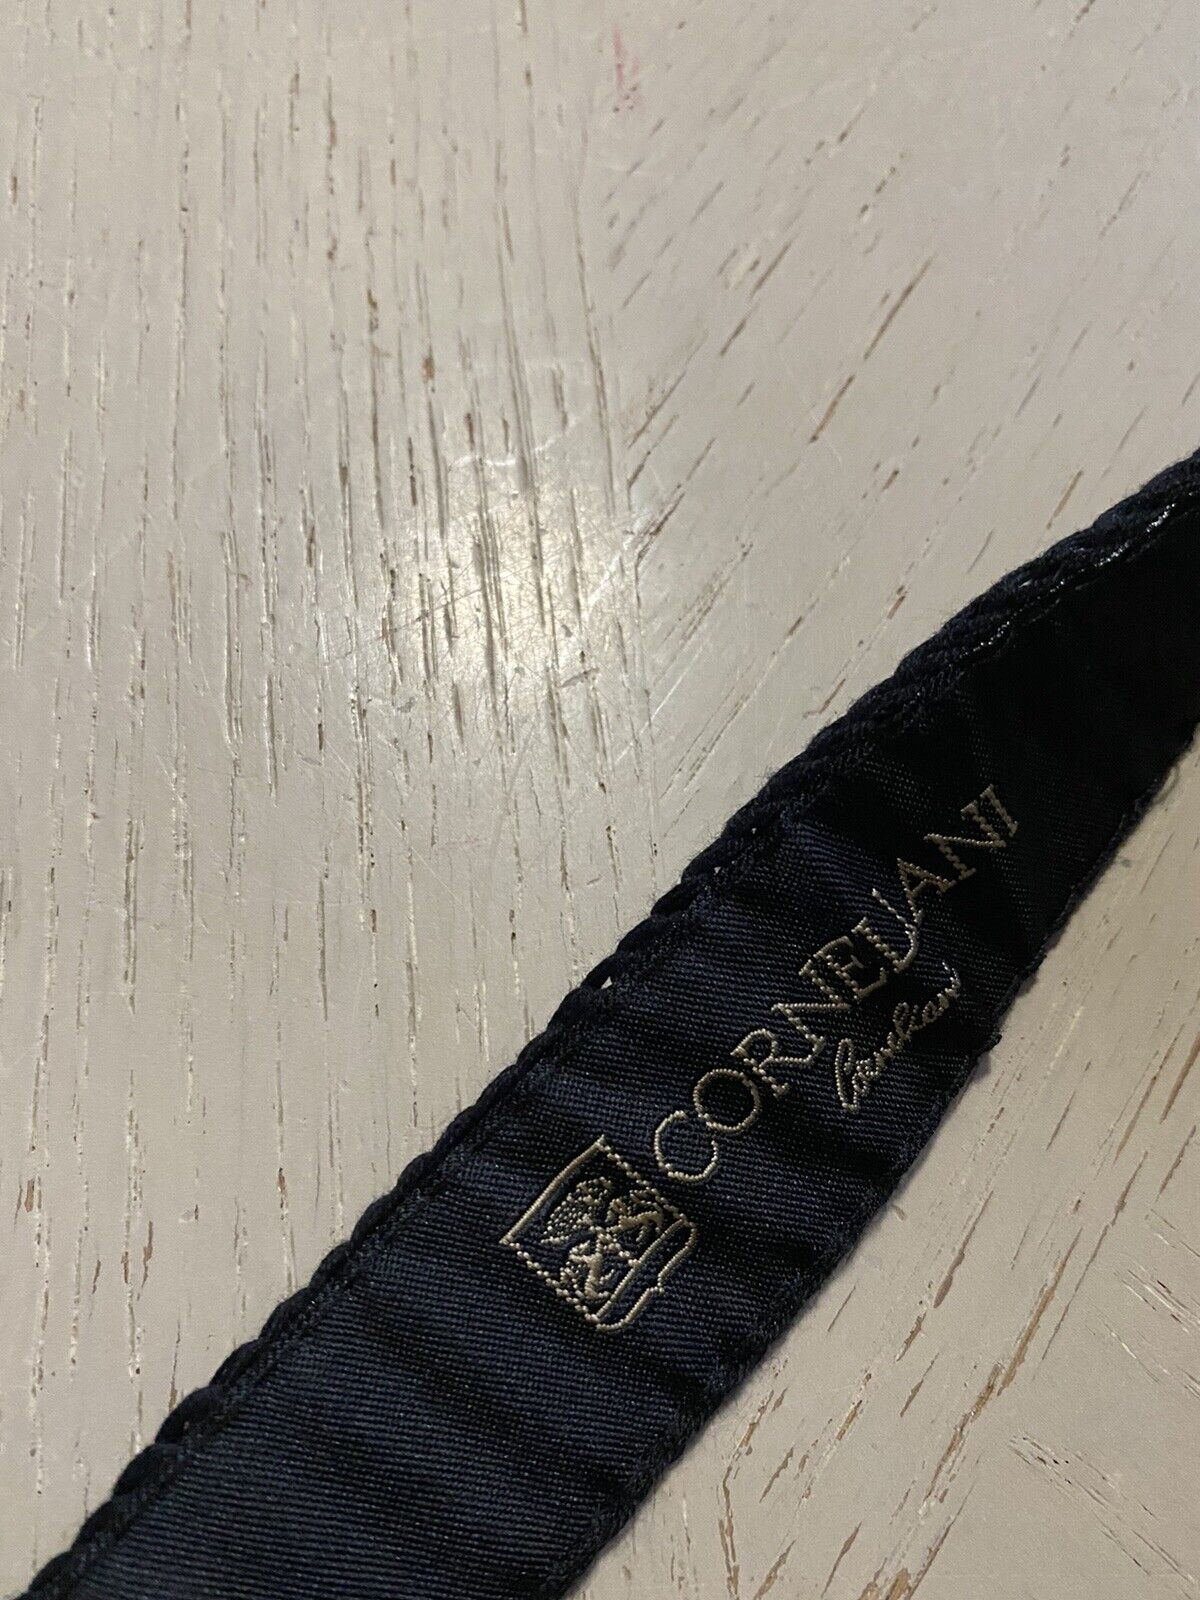 New Corneliani Textured Tie Black Italy